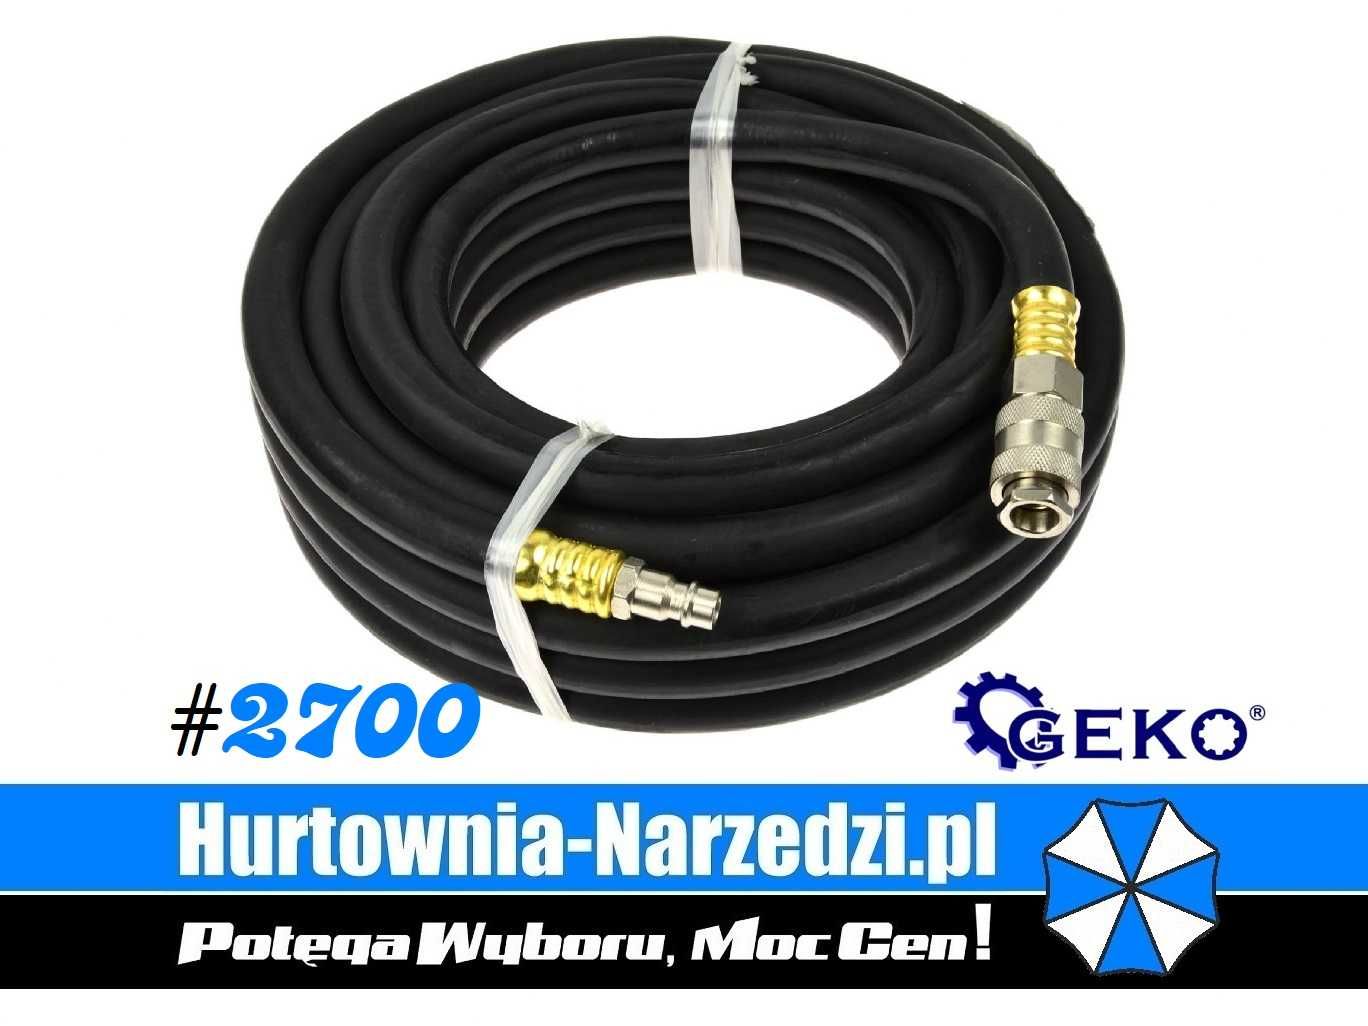 Wąż pneumatyczny 10x17mm 10m z szybkozłączkami, zakuwany Geko G02957